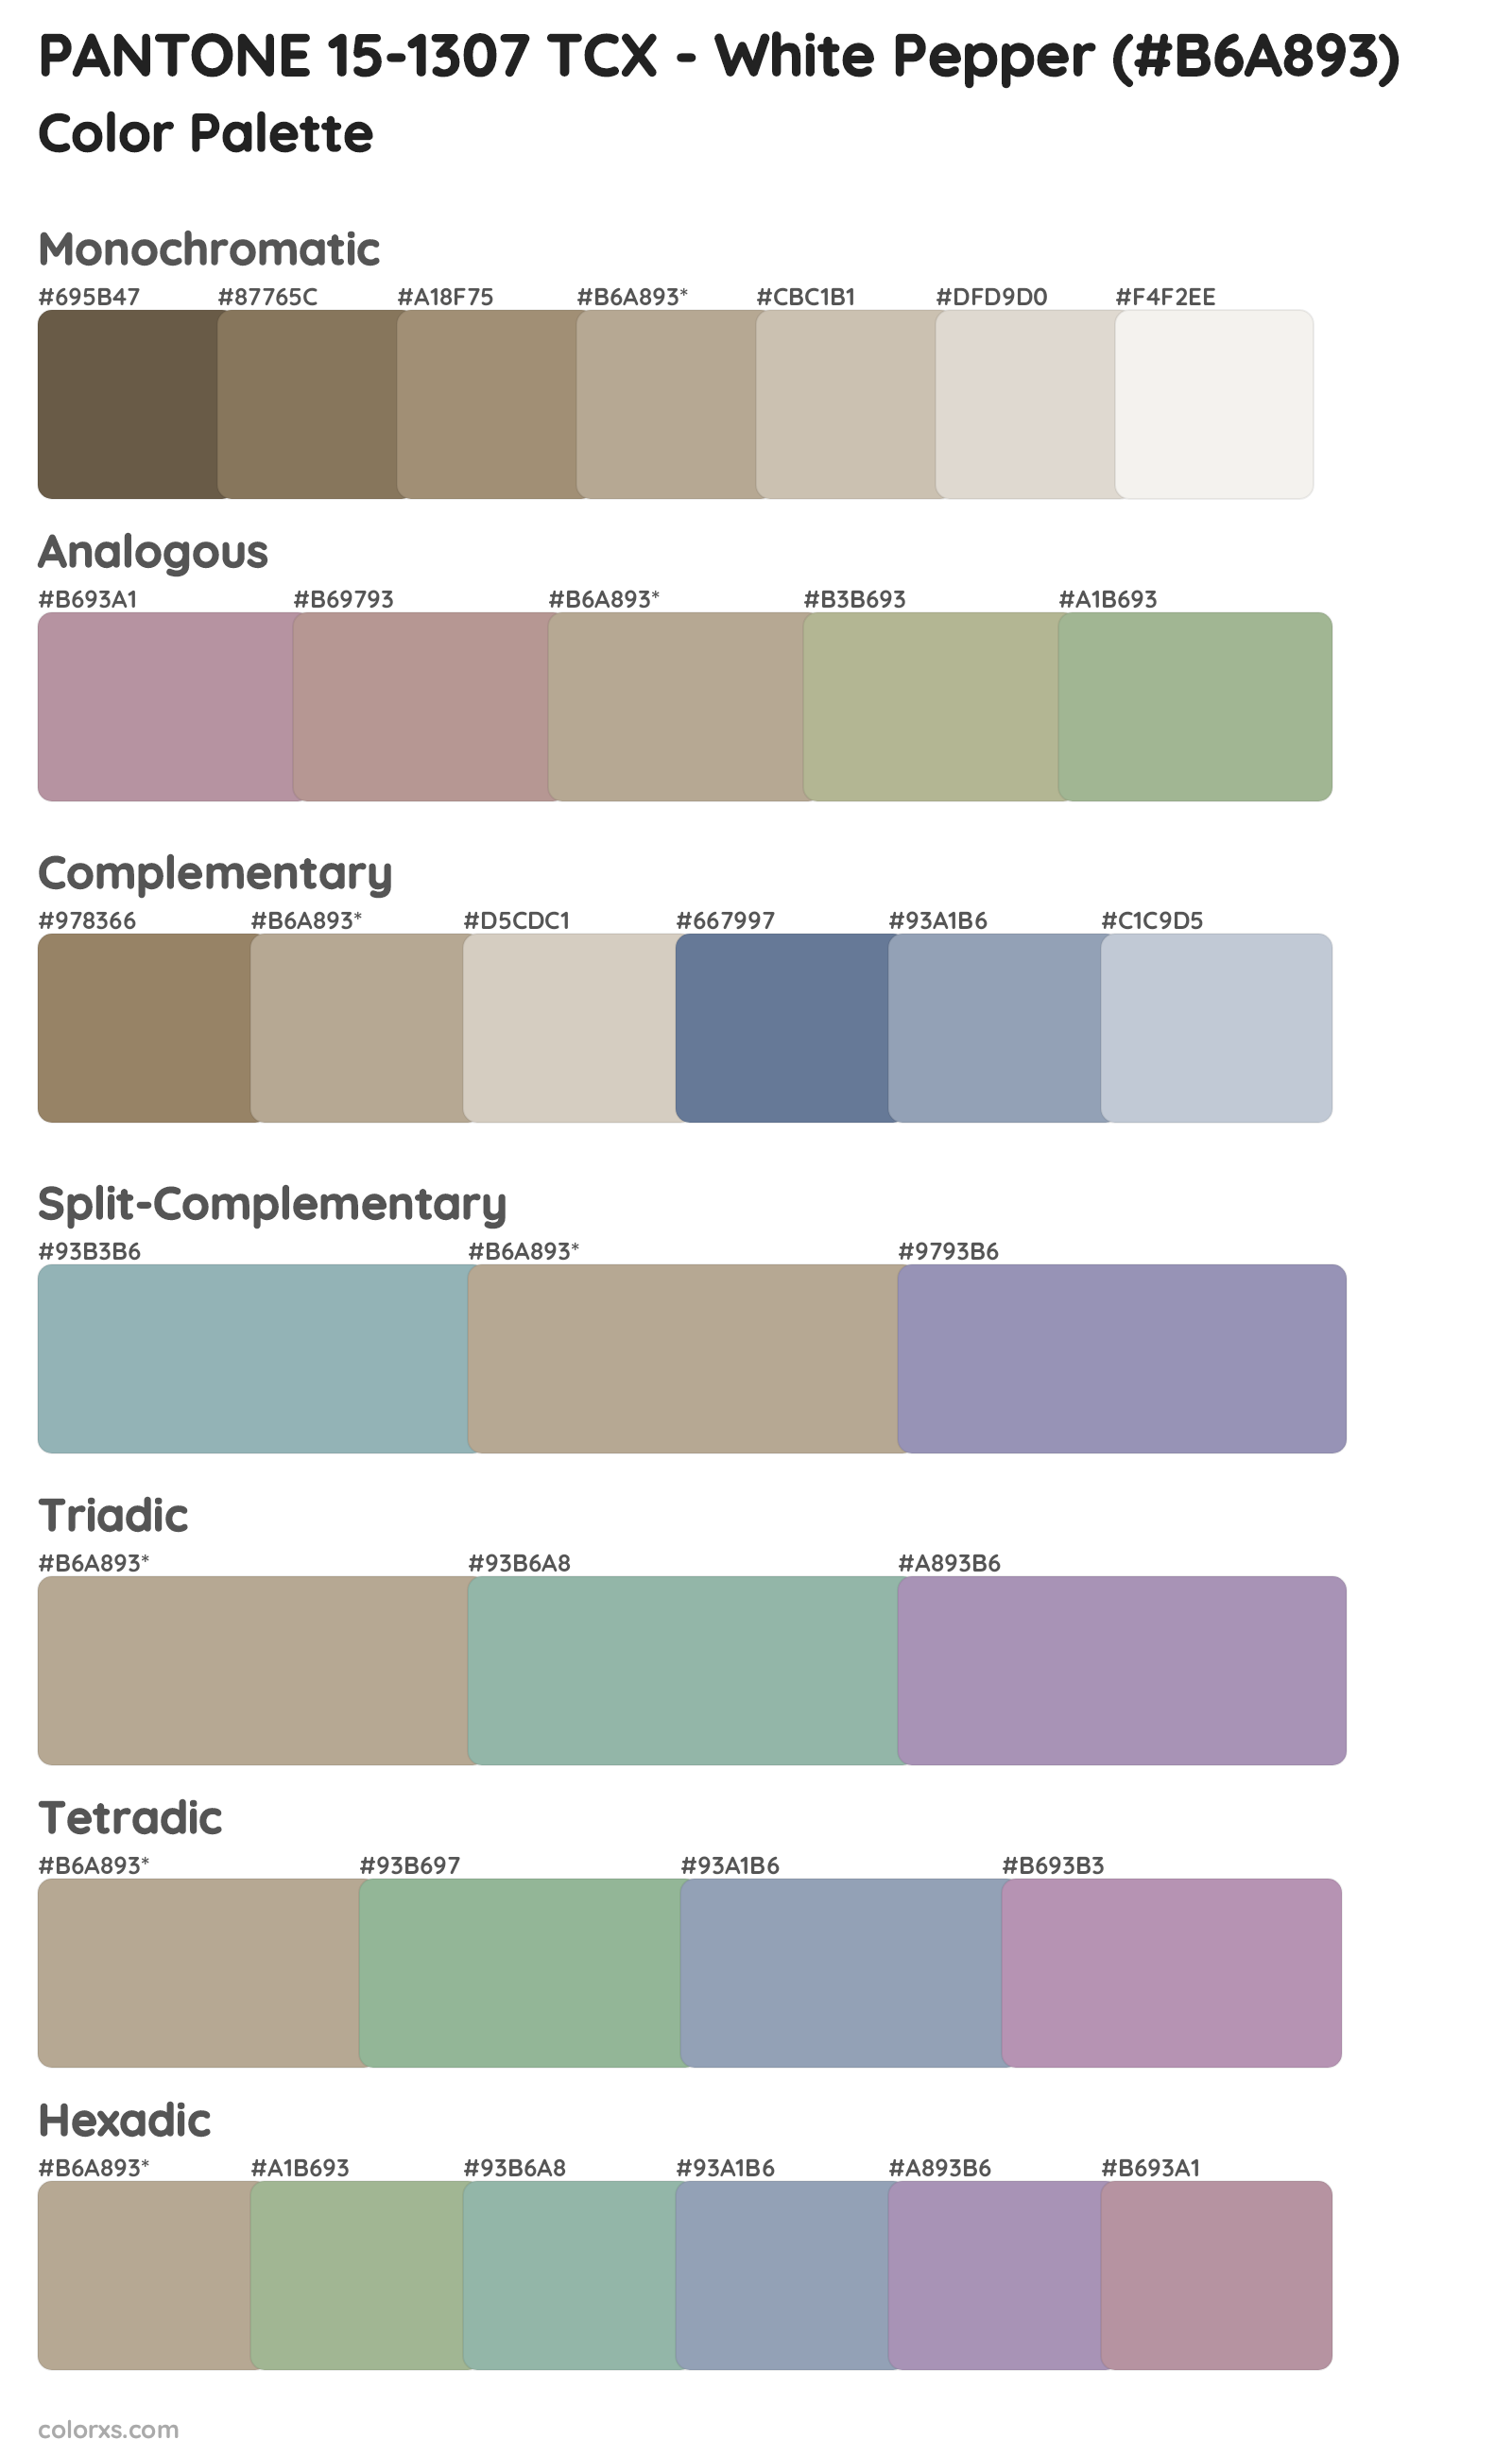 PANTONE 15-1307 TCX - White Pepper Color Scheme Palettes